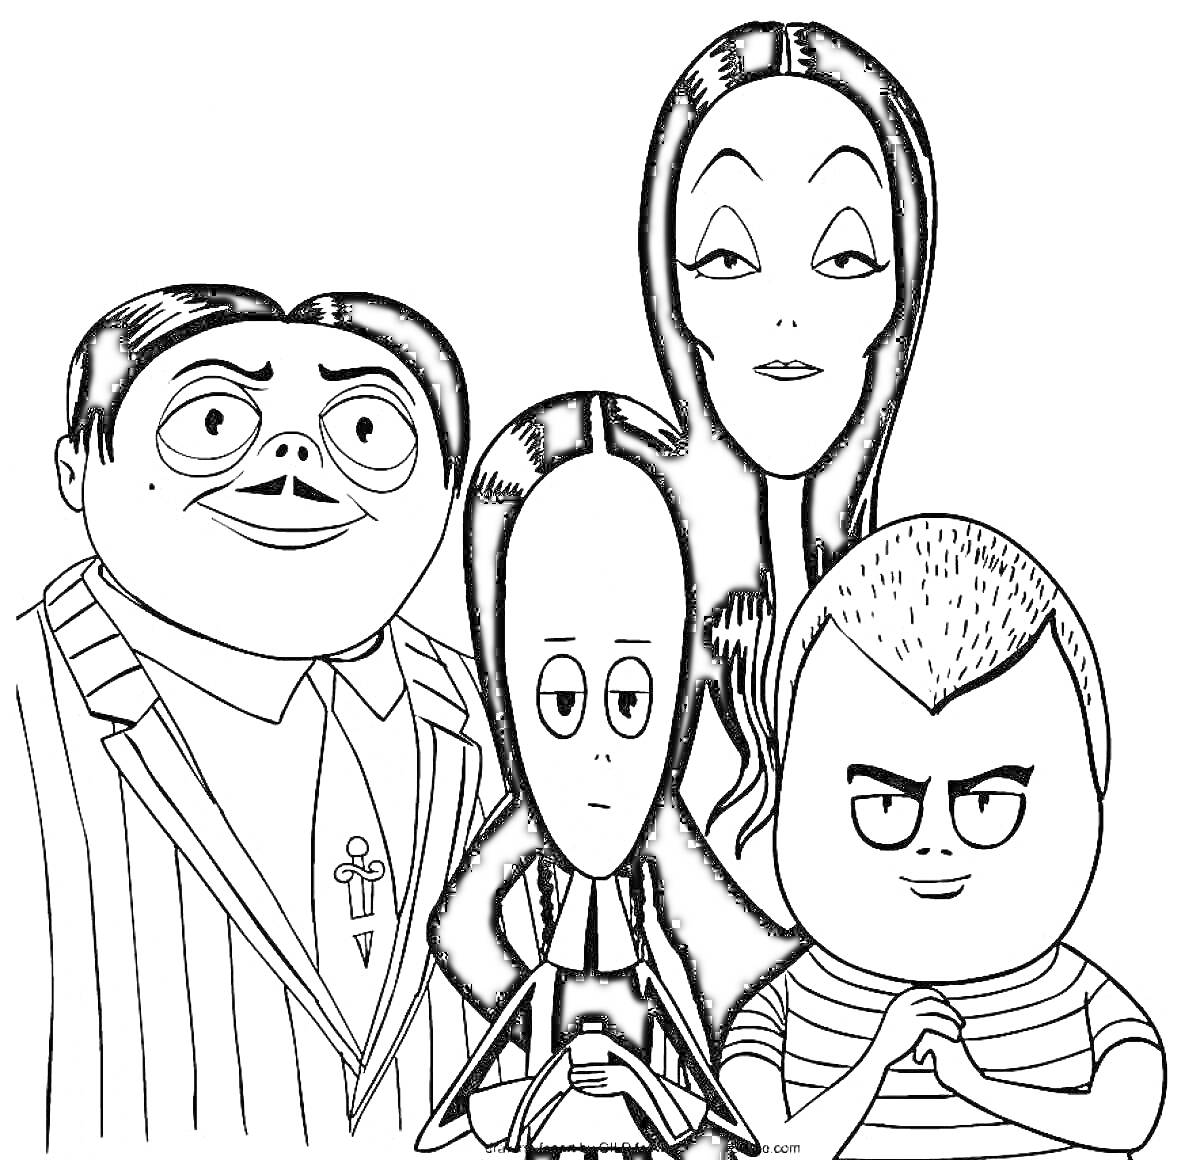 Раскраска Семья Адамс: четыре персонажа